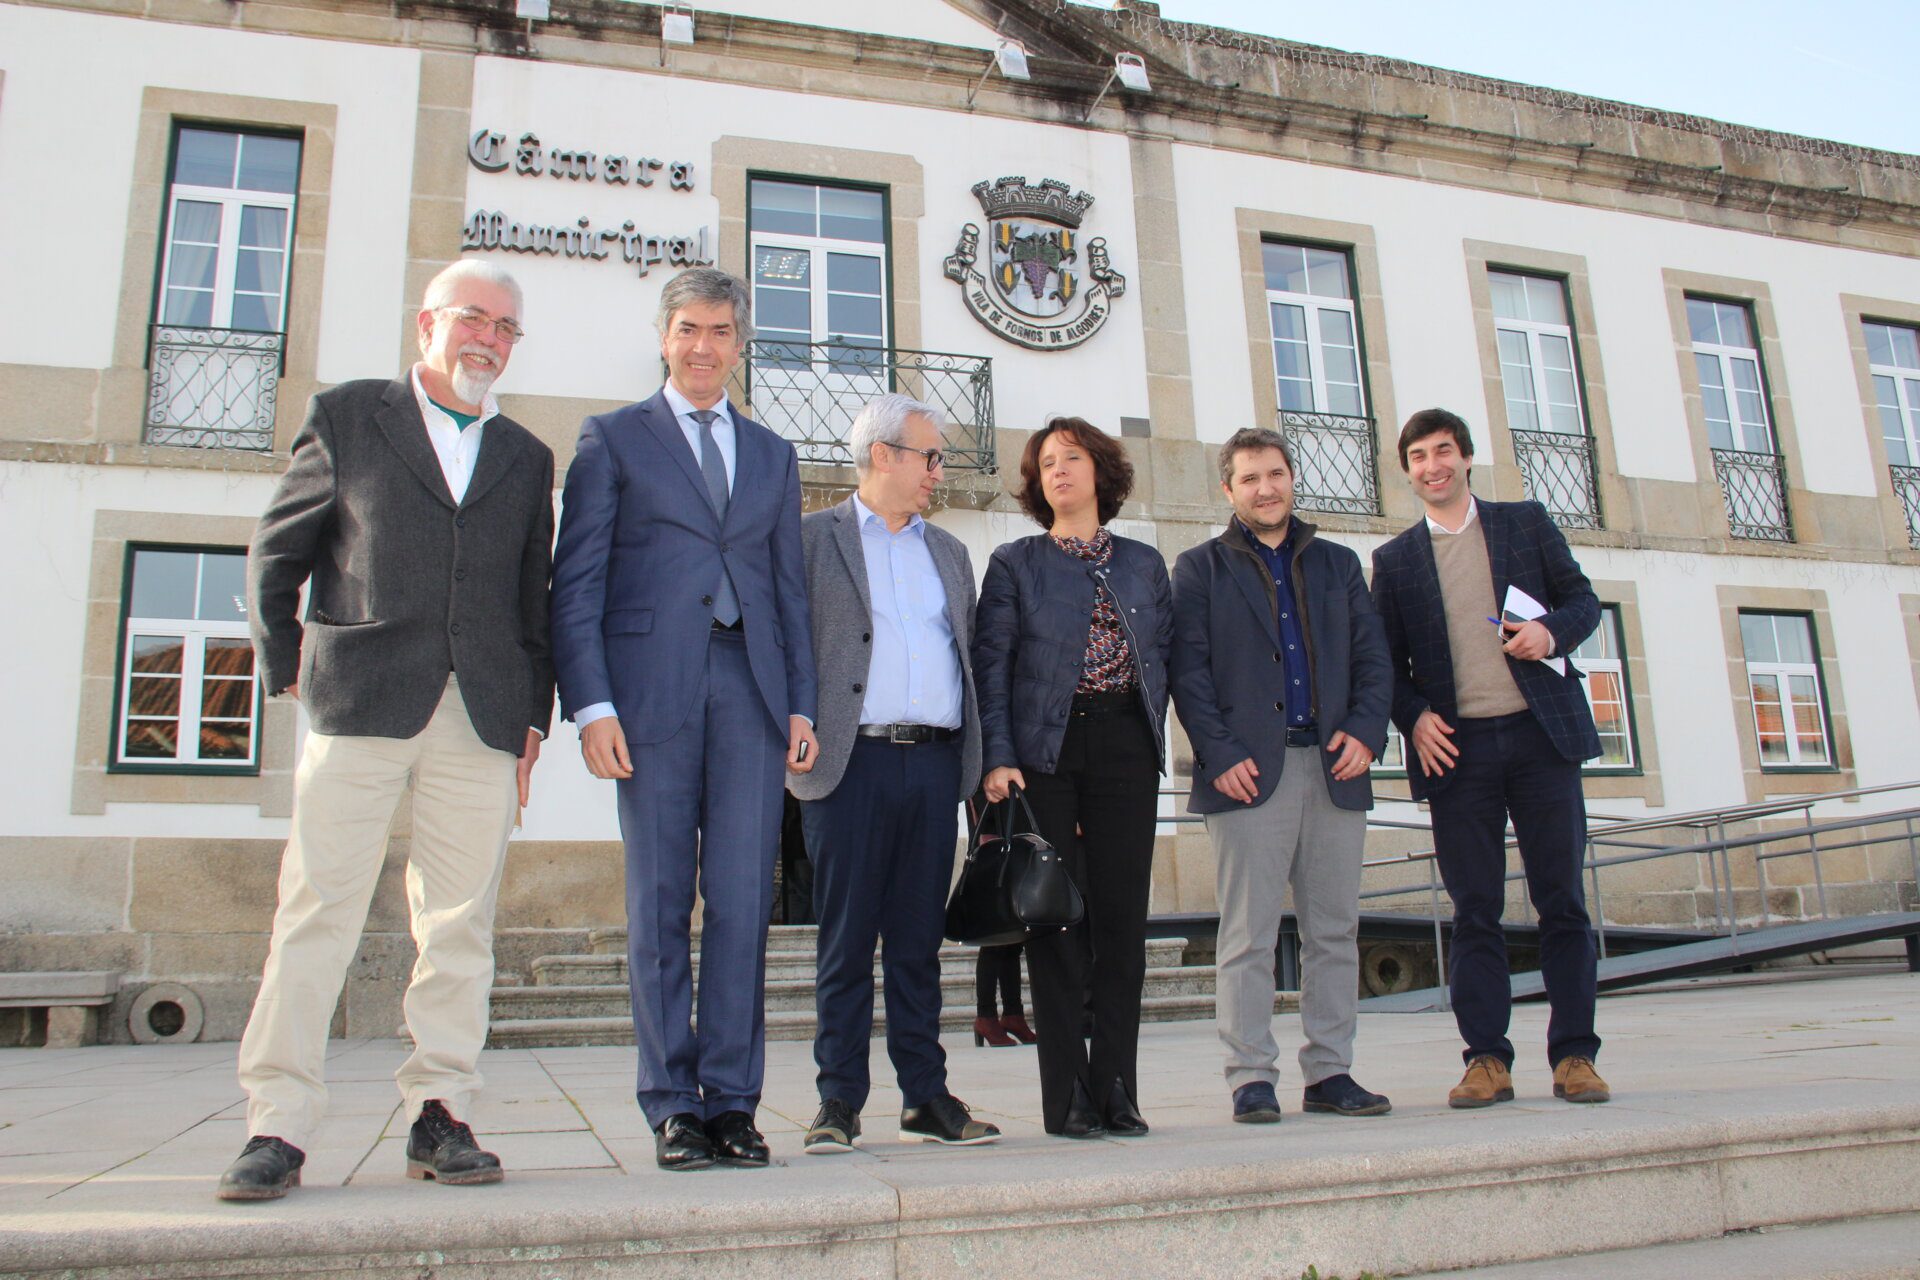 Visita de dois dias da Secretária de Estado do Turismo ao Centro de Portugal com balanço “muito positivo”